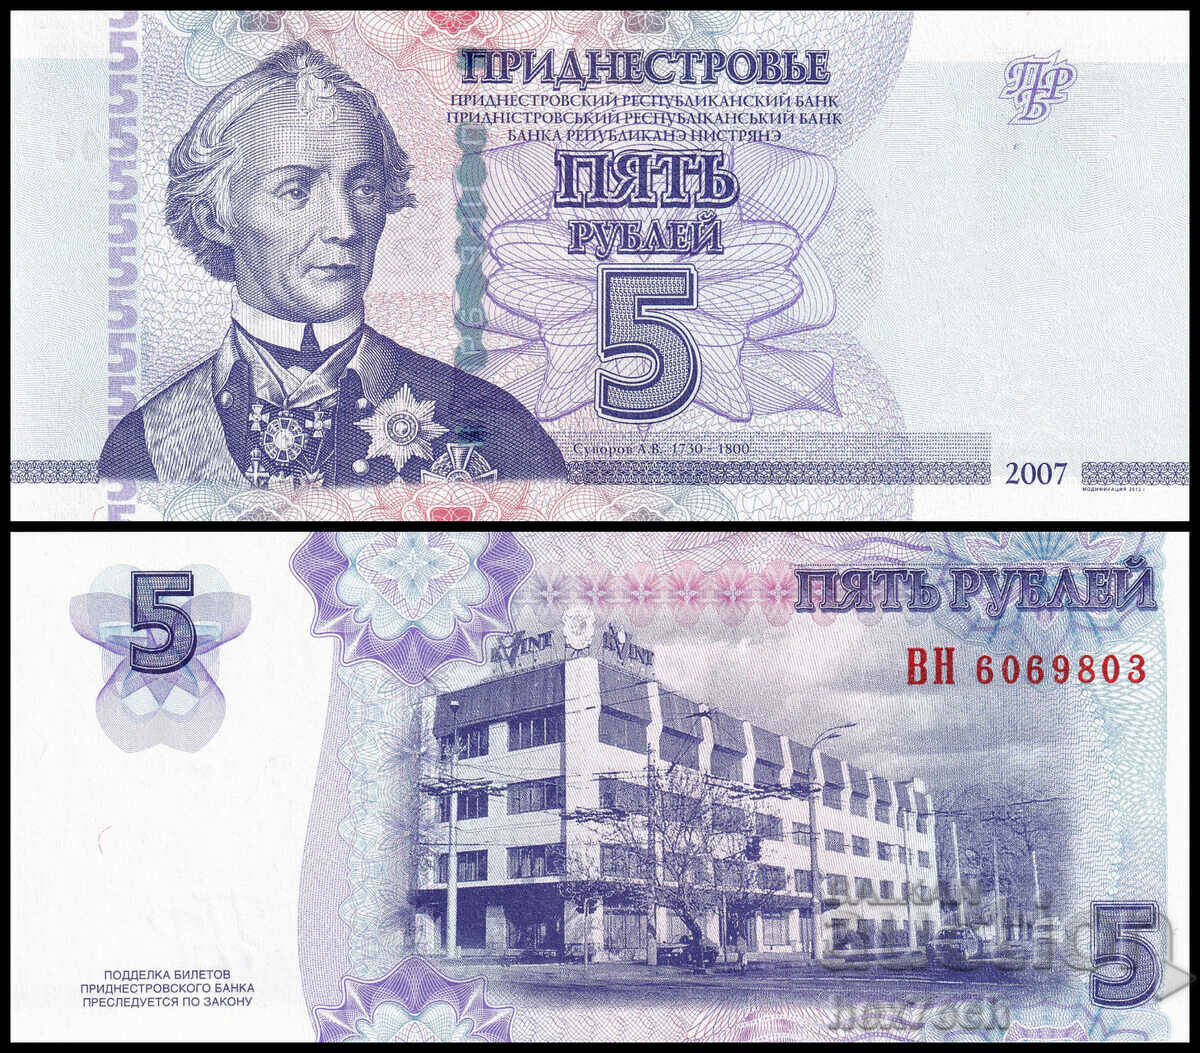 ❤️ ⭐ Transnistria 2012 5 rubles UNC new ⭐ ❤️